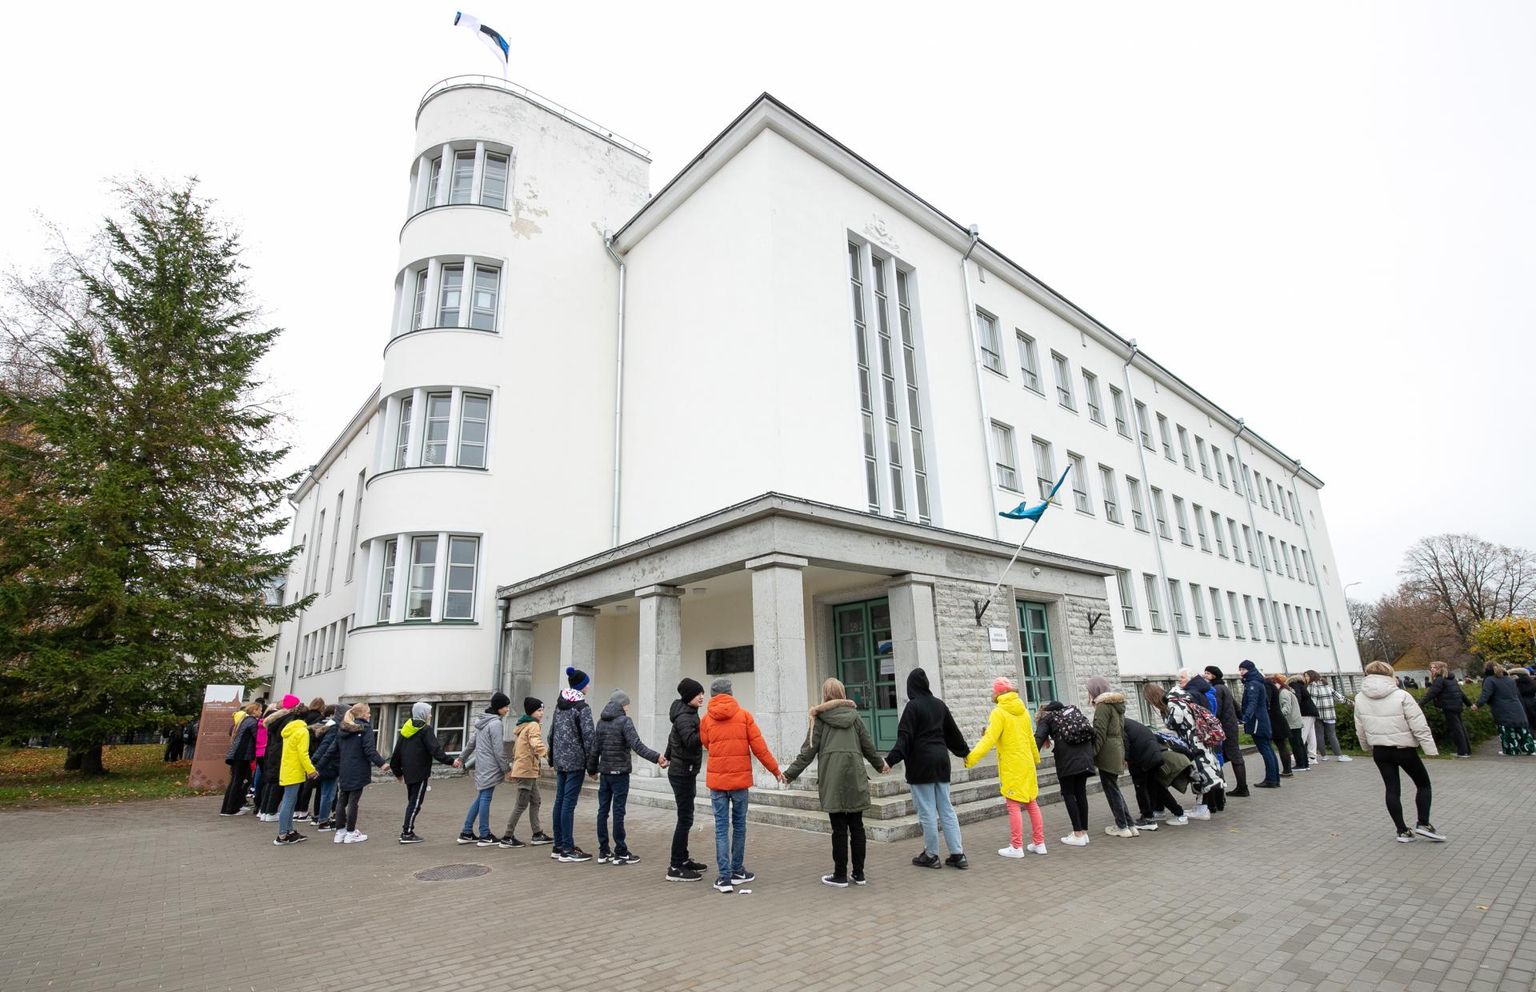 Õpilased hindavad Rakvere gümnaasiumi ajaloolist hoonet, kuhu jääb pärast Rakvere riigigümnaasiumi valmimist tegutsema põhikool.
 